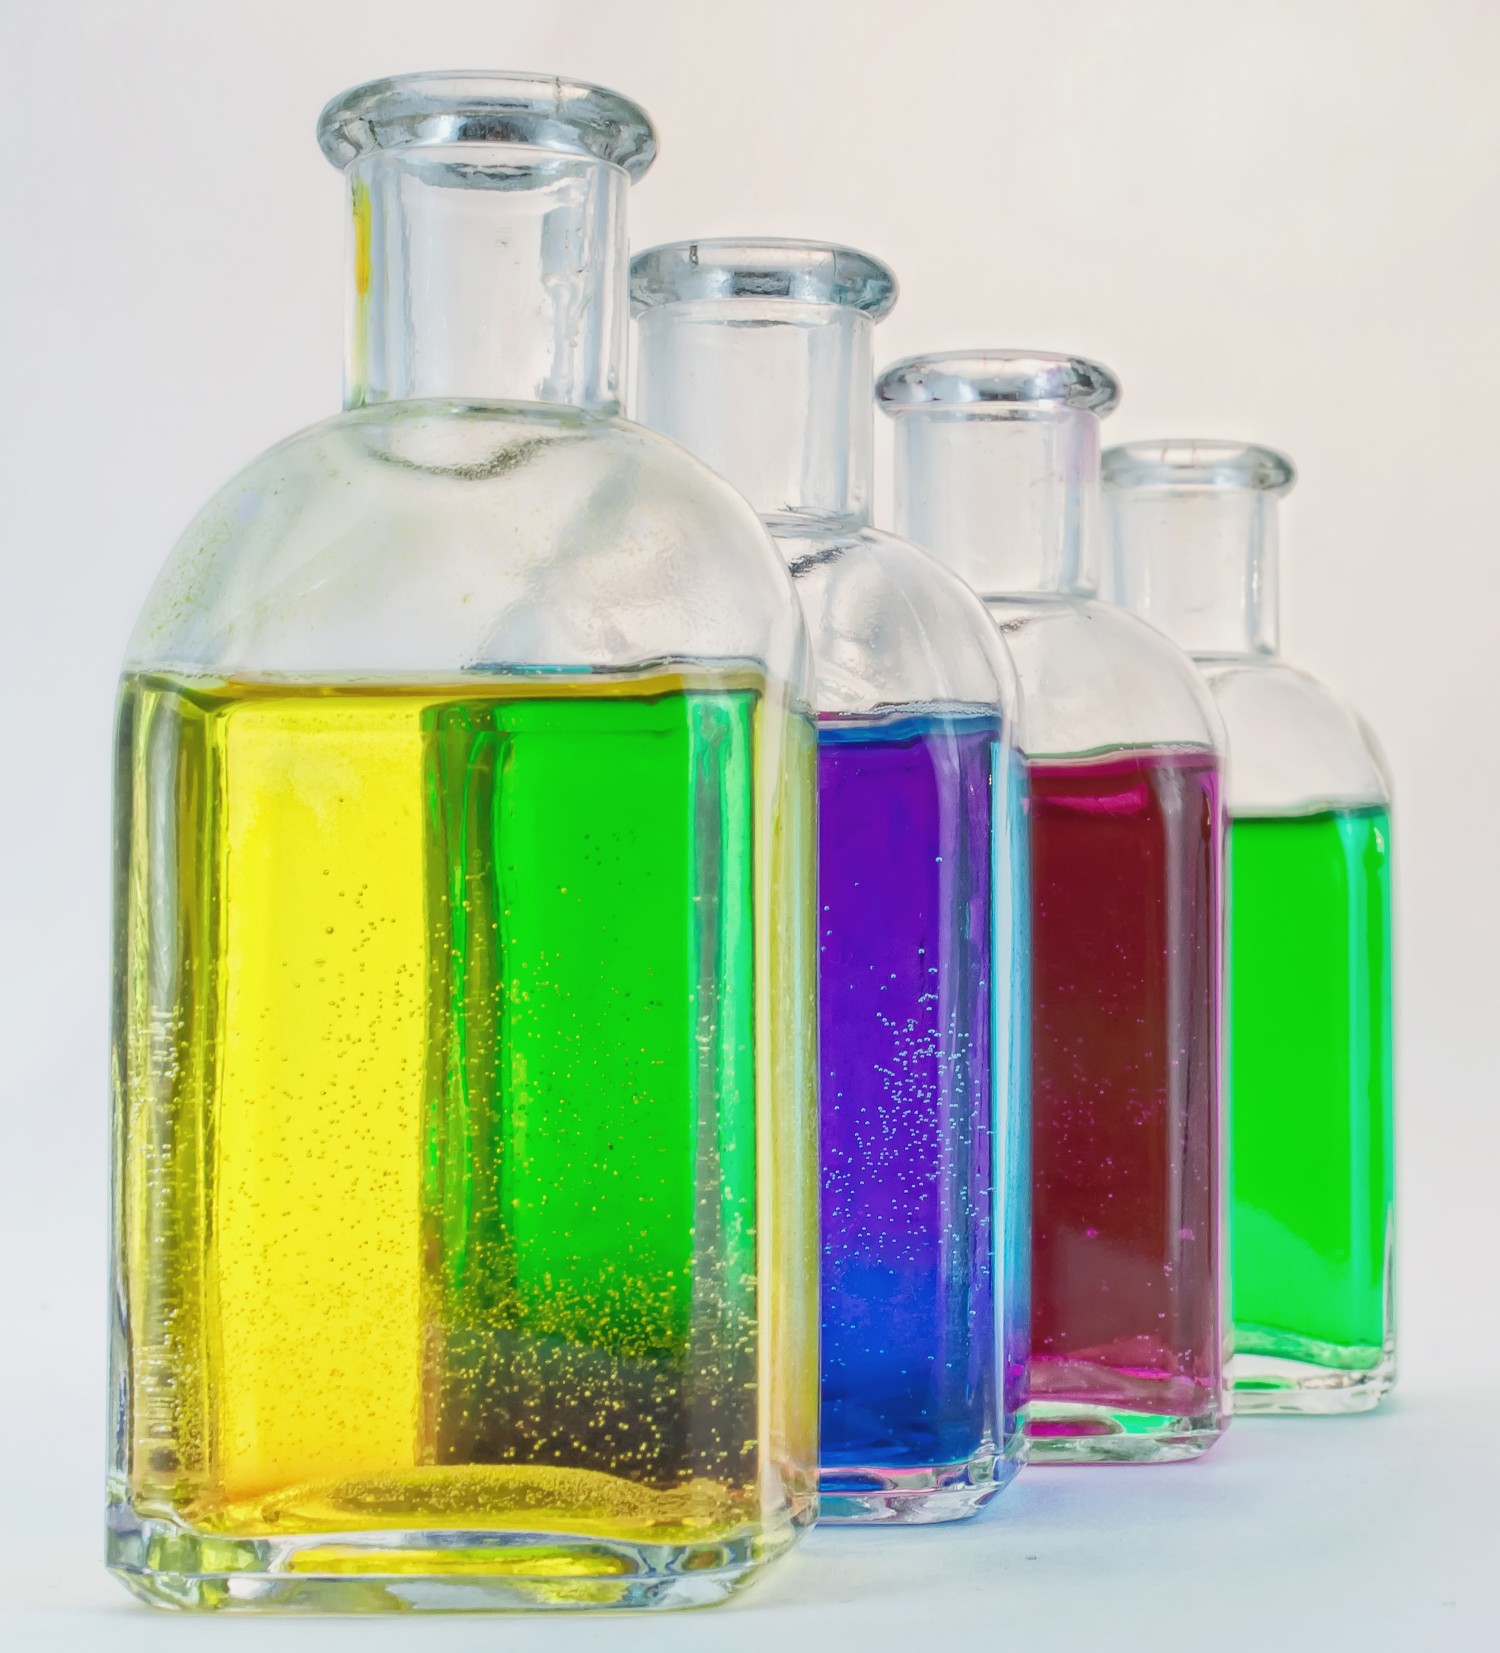 Bottles containing colored liquid